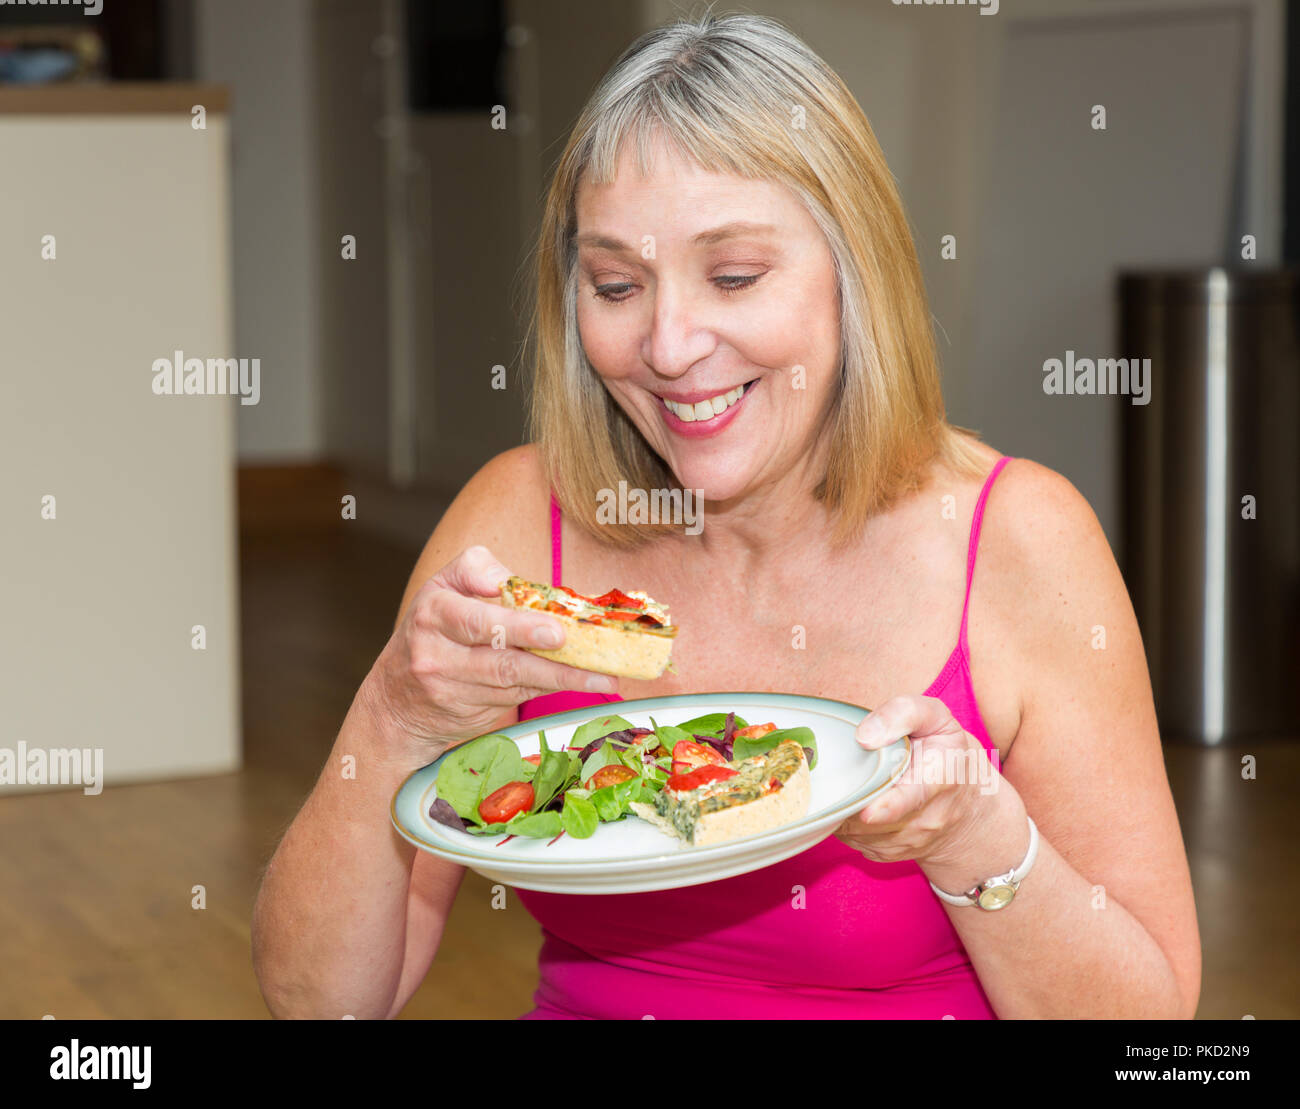 Femme mangeant un repas salade et quiche Banque D'Images